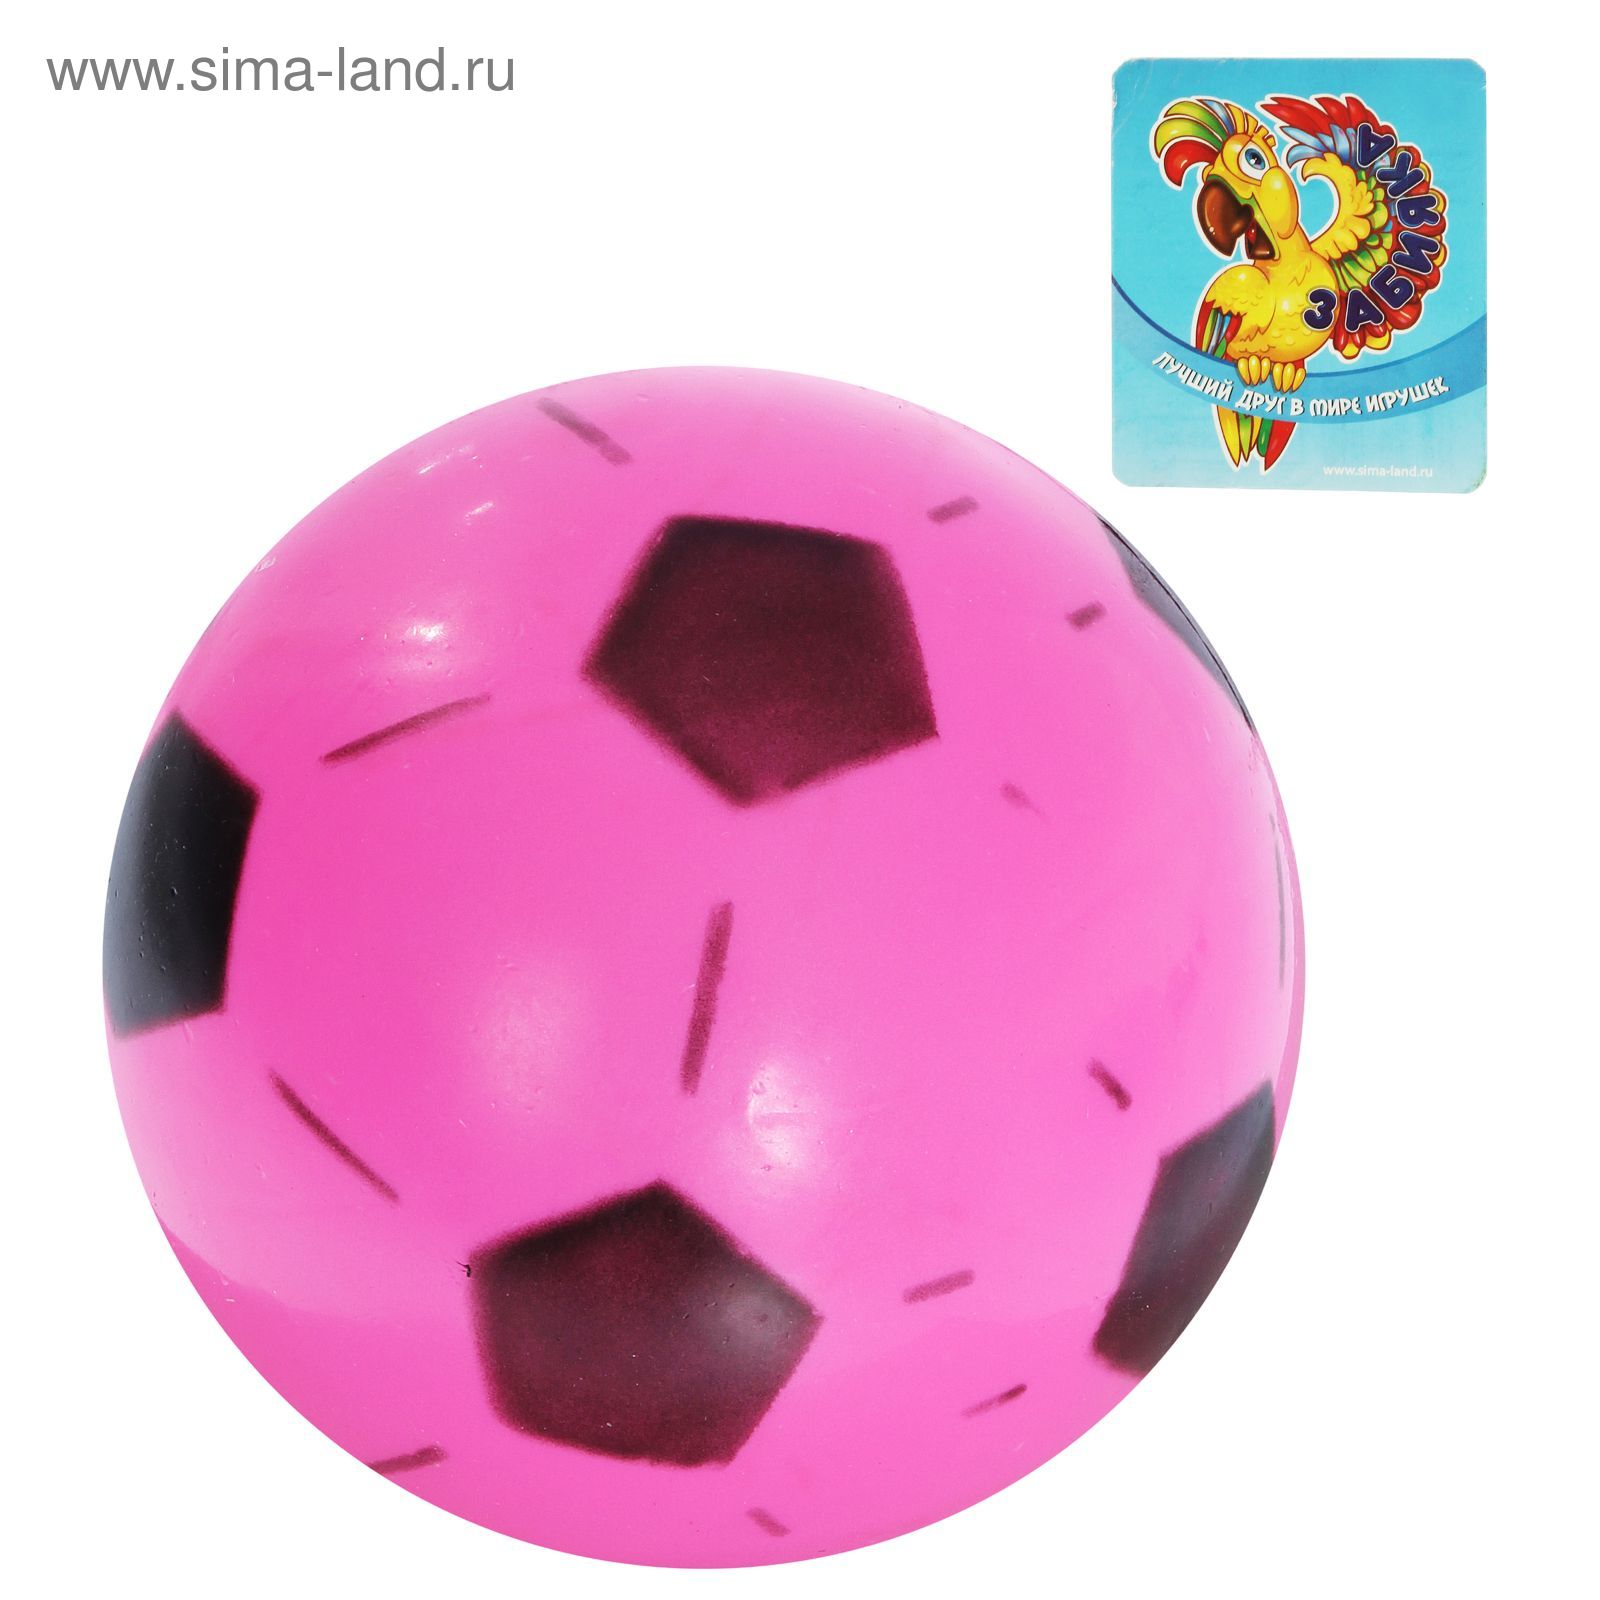 Мяч футбольный "World Cup 2014", d=16 см, 45 гр, МИКС